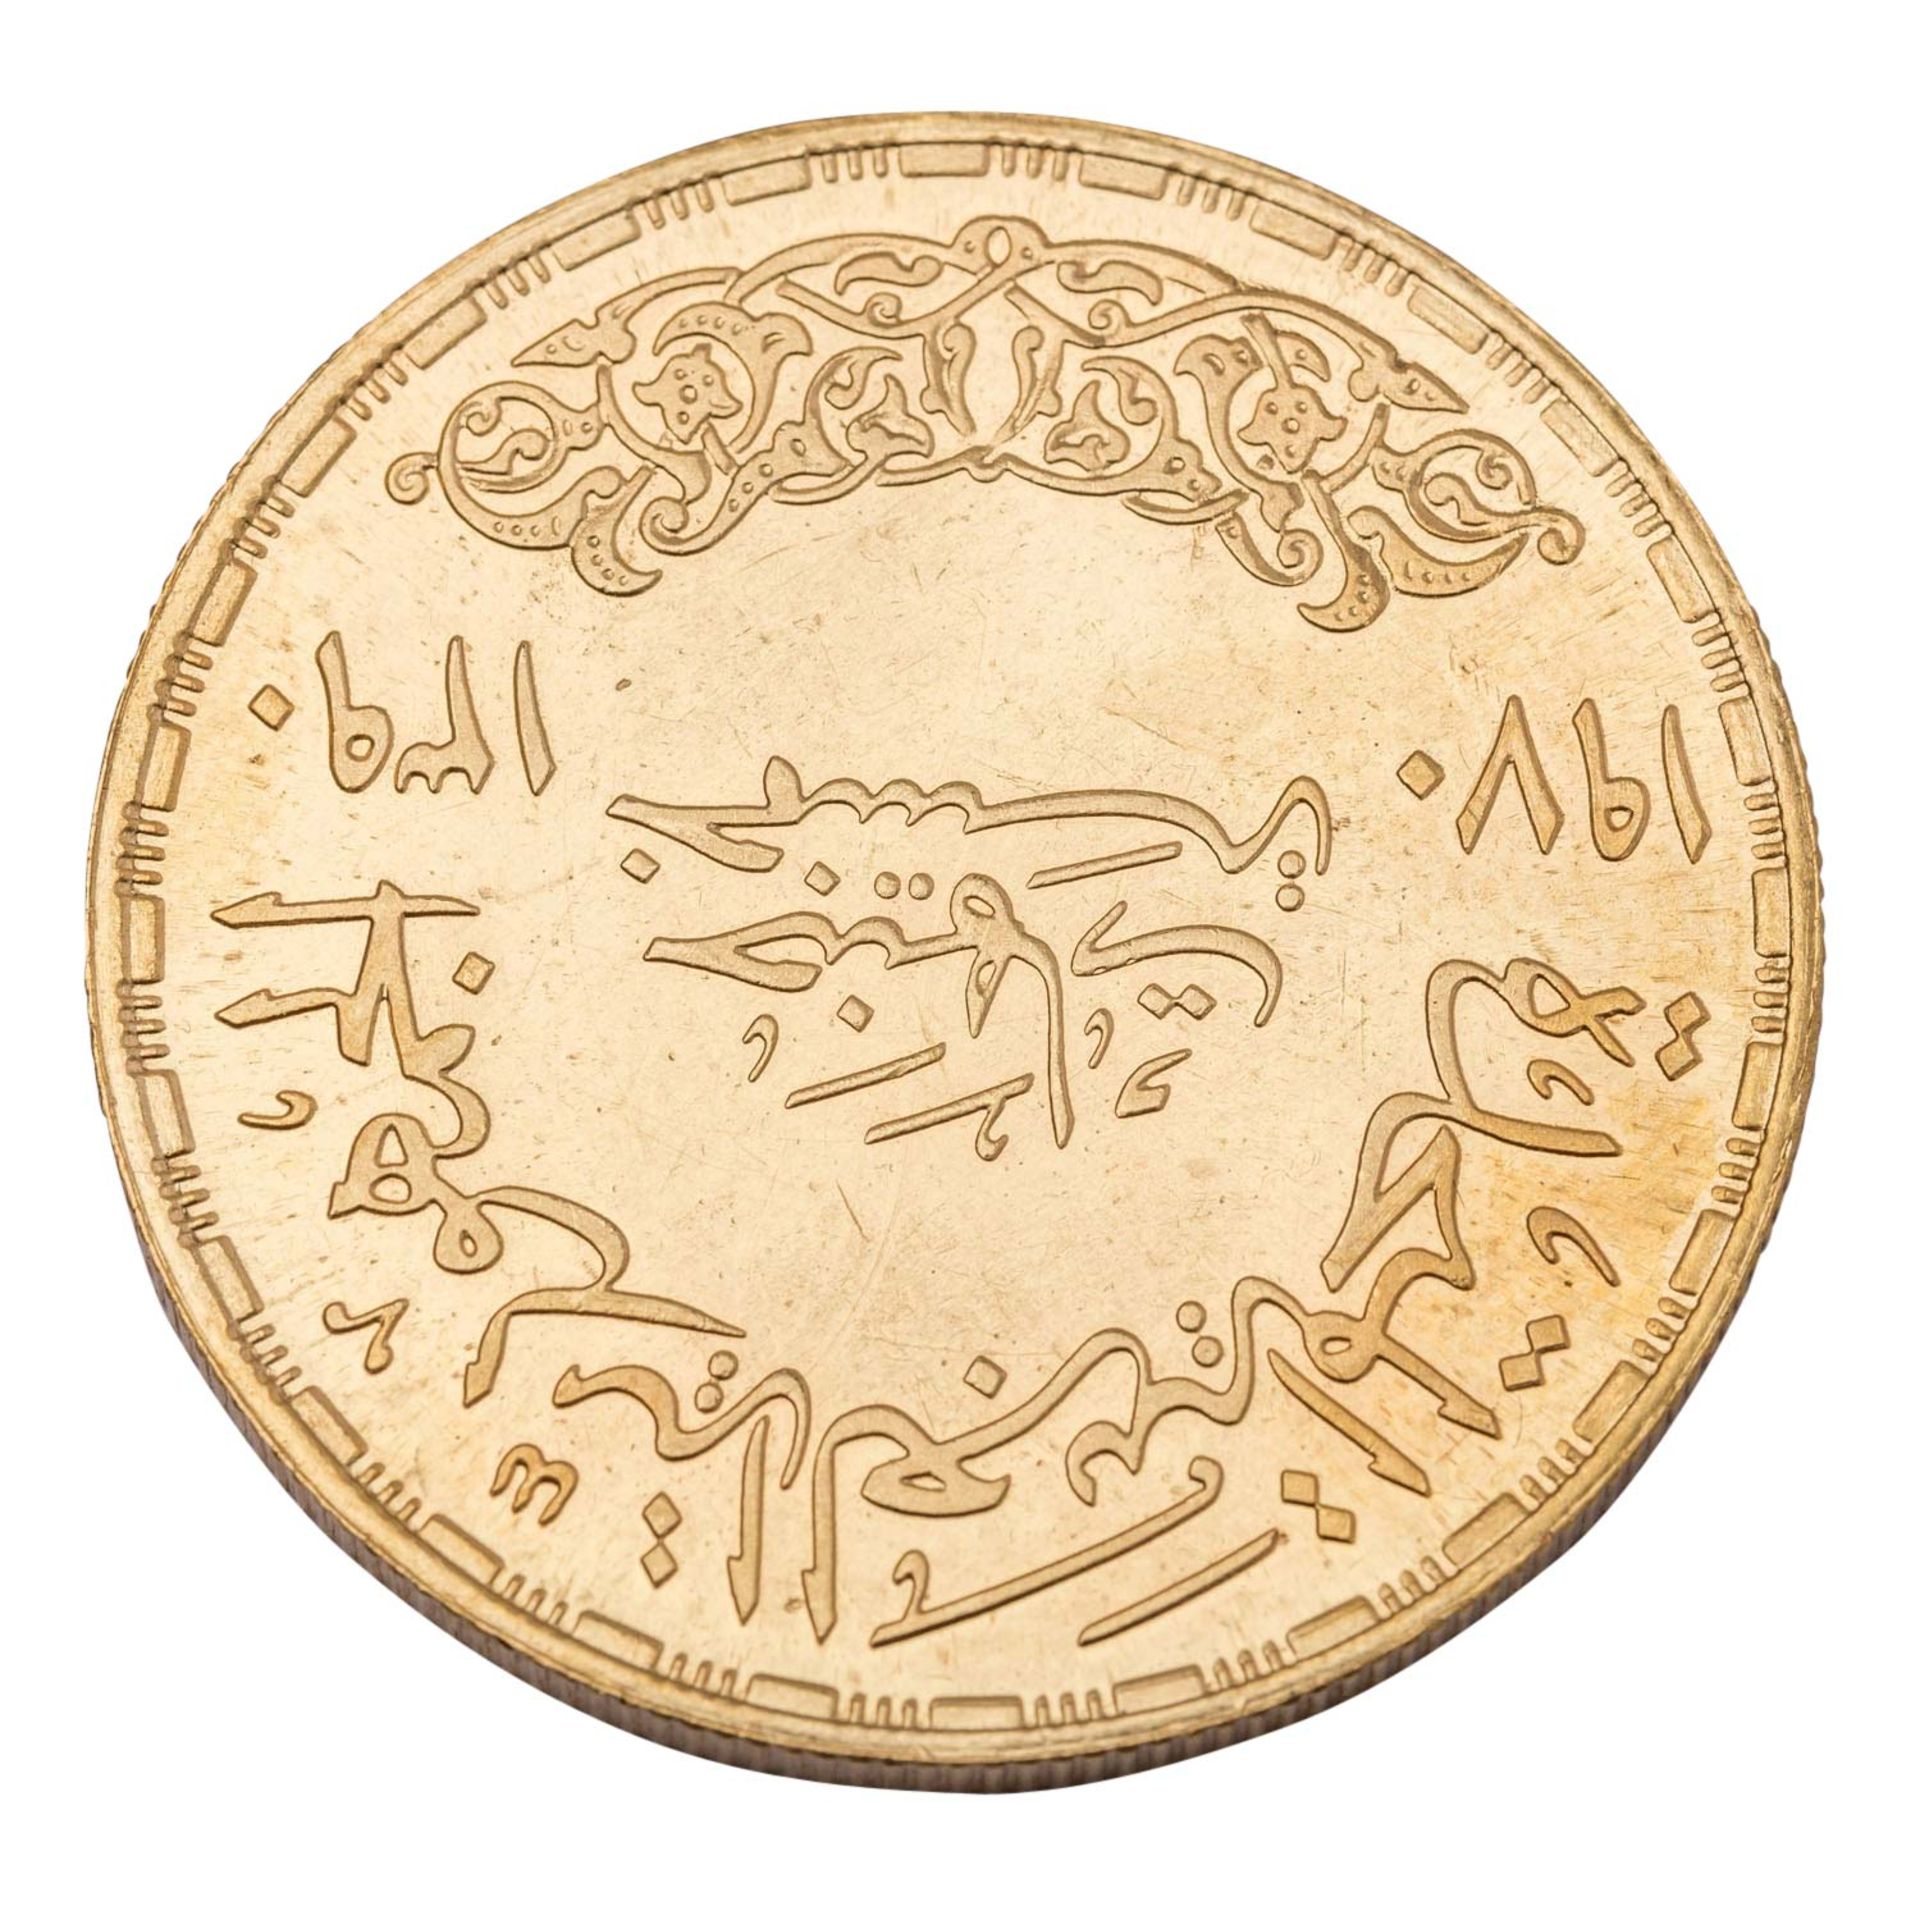 Ägypten - Vereinigte Arabische Republik (1958-1971), Präsident Nasser 5 Pounds 1970 - Image 2 of 2